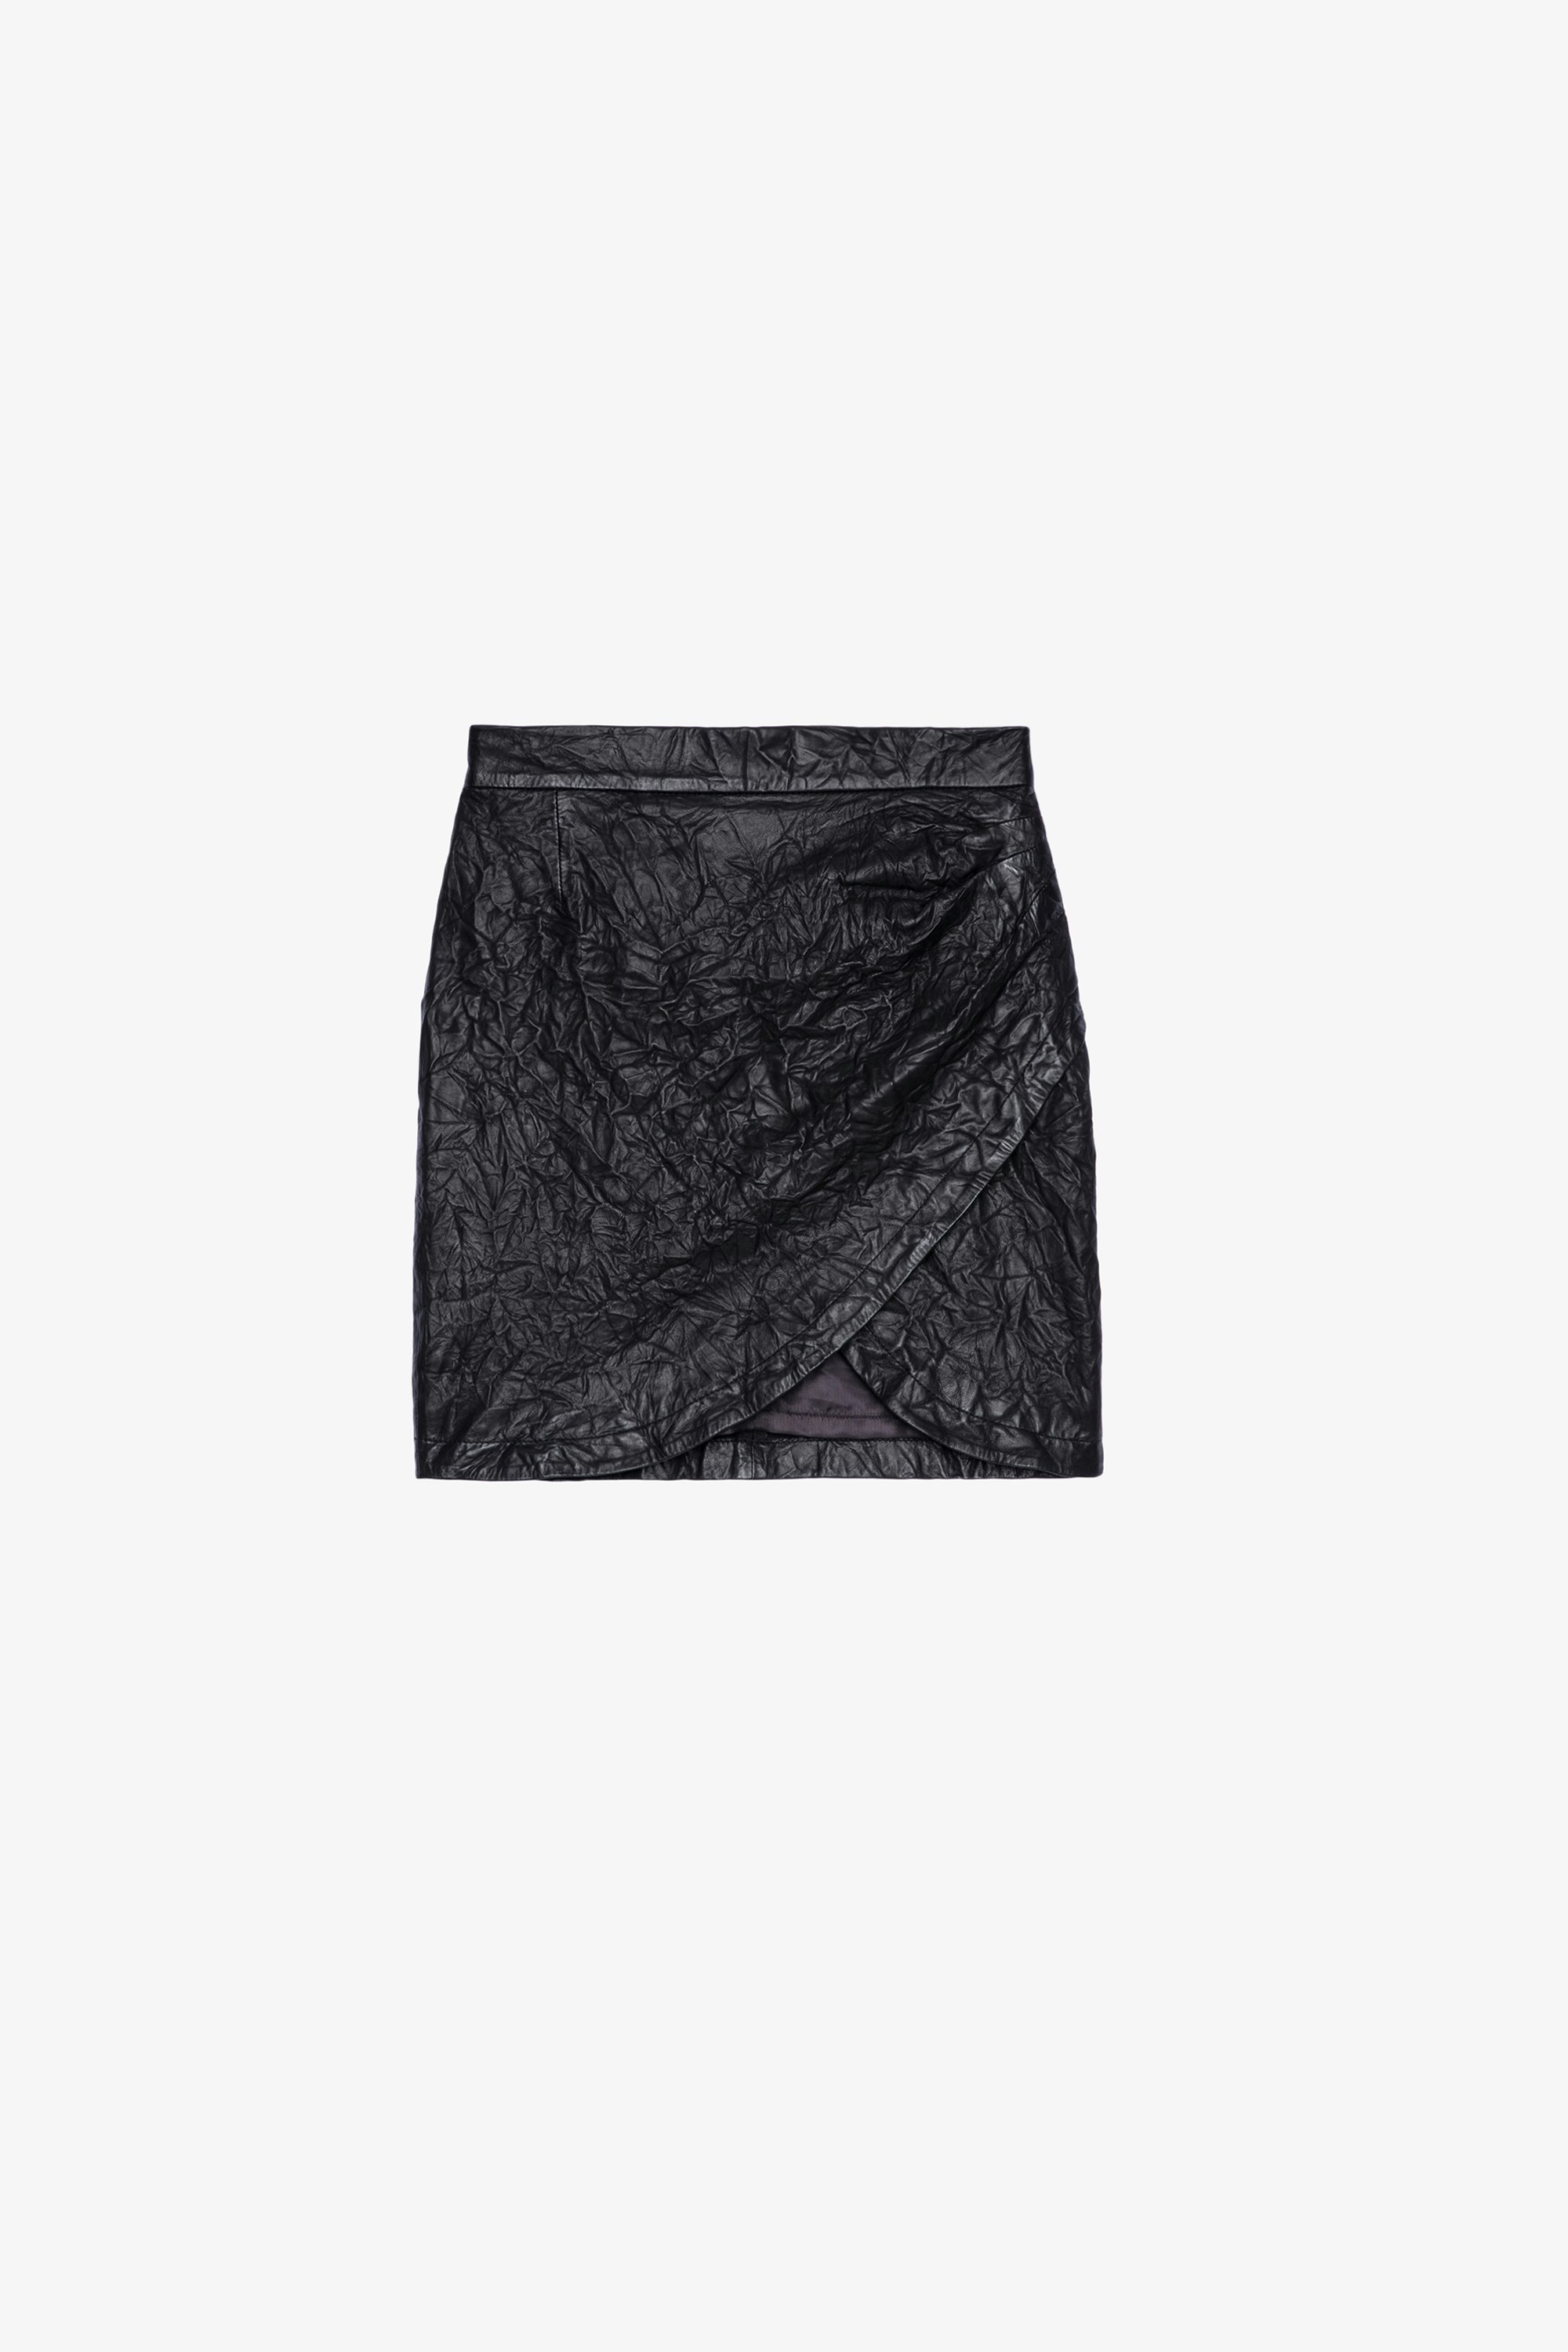 Julipe Crinkled Leather Skirt - Women's short black crinkled leather skirt with wallet effect.